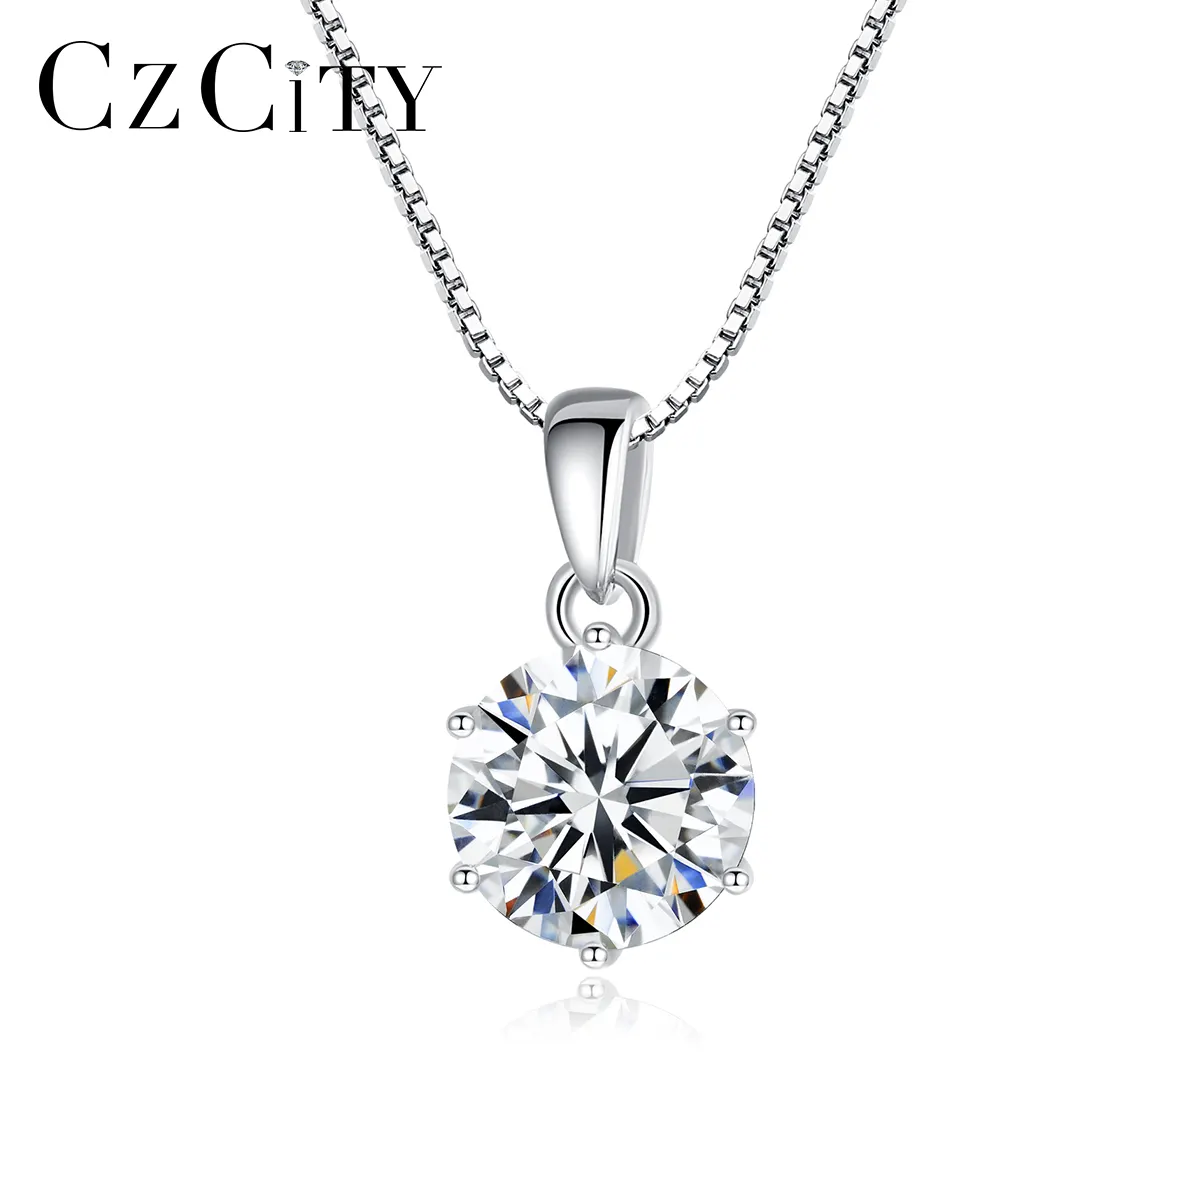 Czcity Fijne Sieraden Witte Diamant 6 Klauw Hanger Ketting 925 Sterling Zilveren Vvs Moissanite Hanger